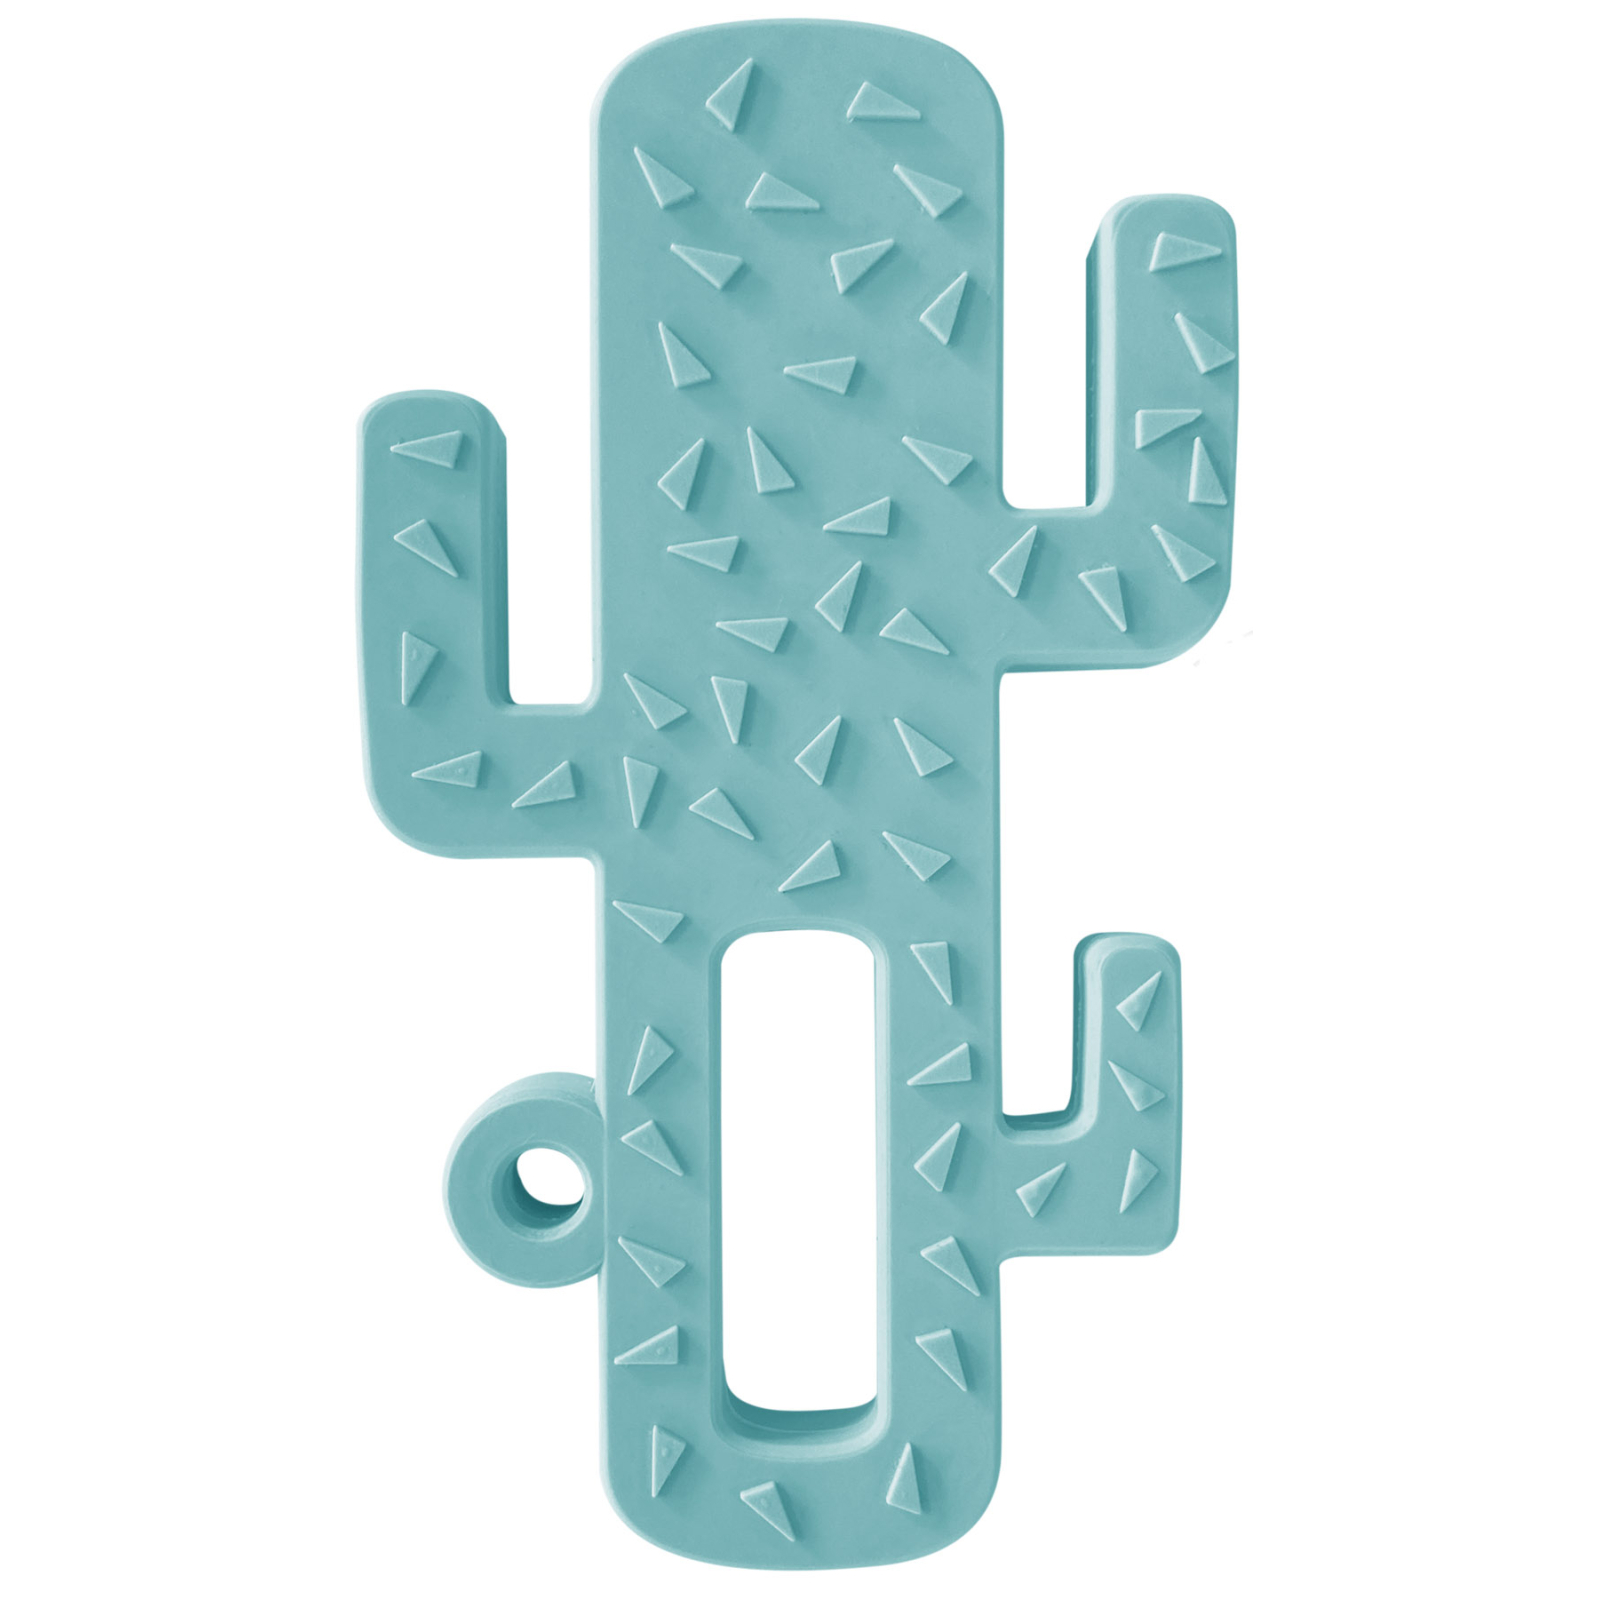 Прорезыватель MinikOiOi Cactus - Aqua Green (101090001)